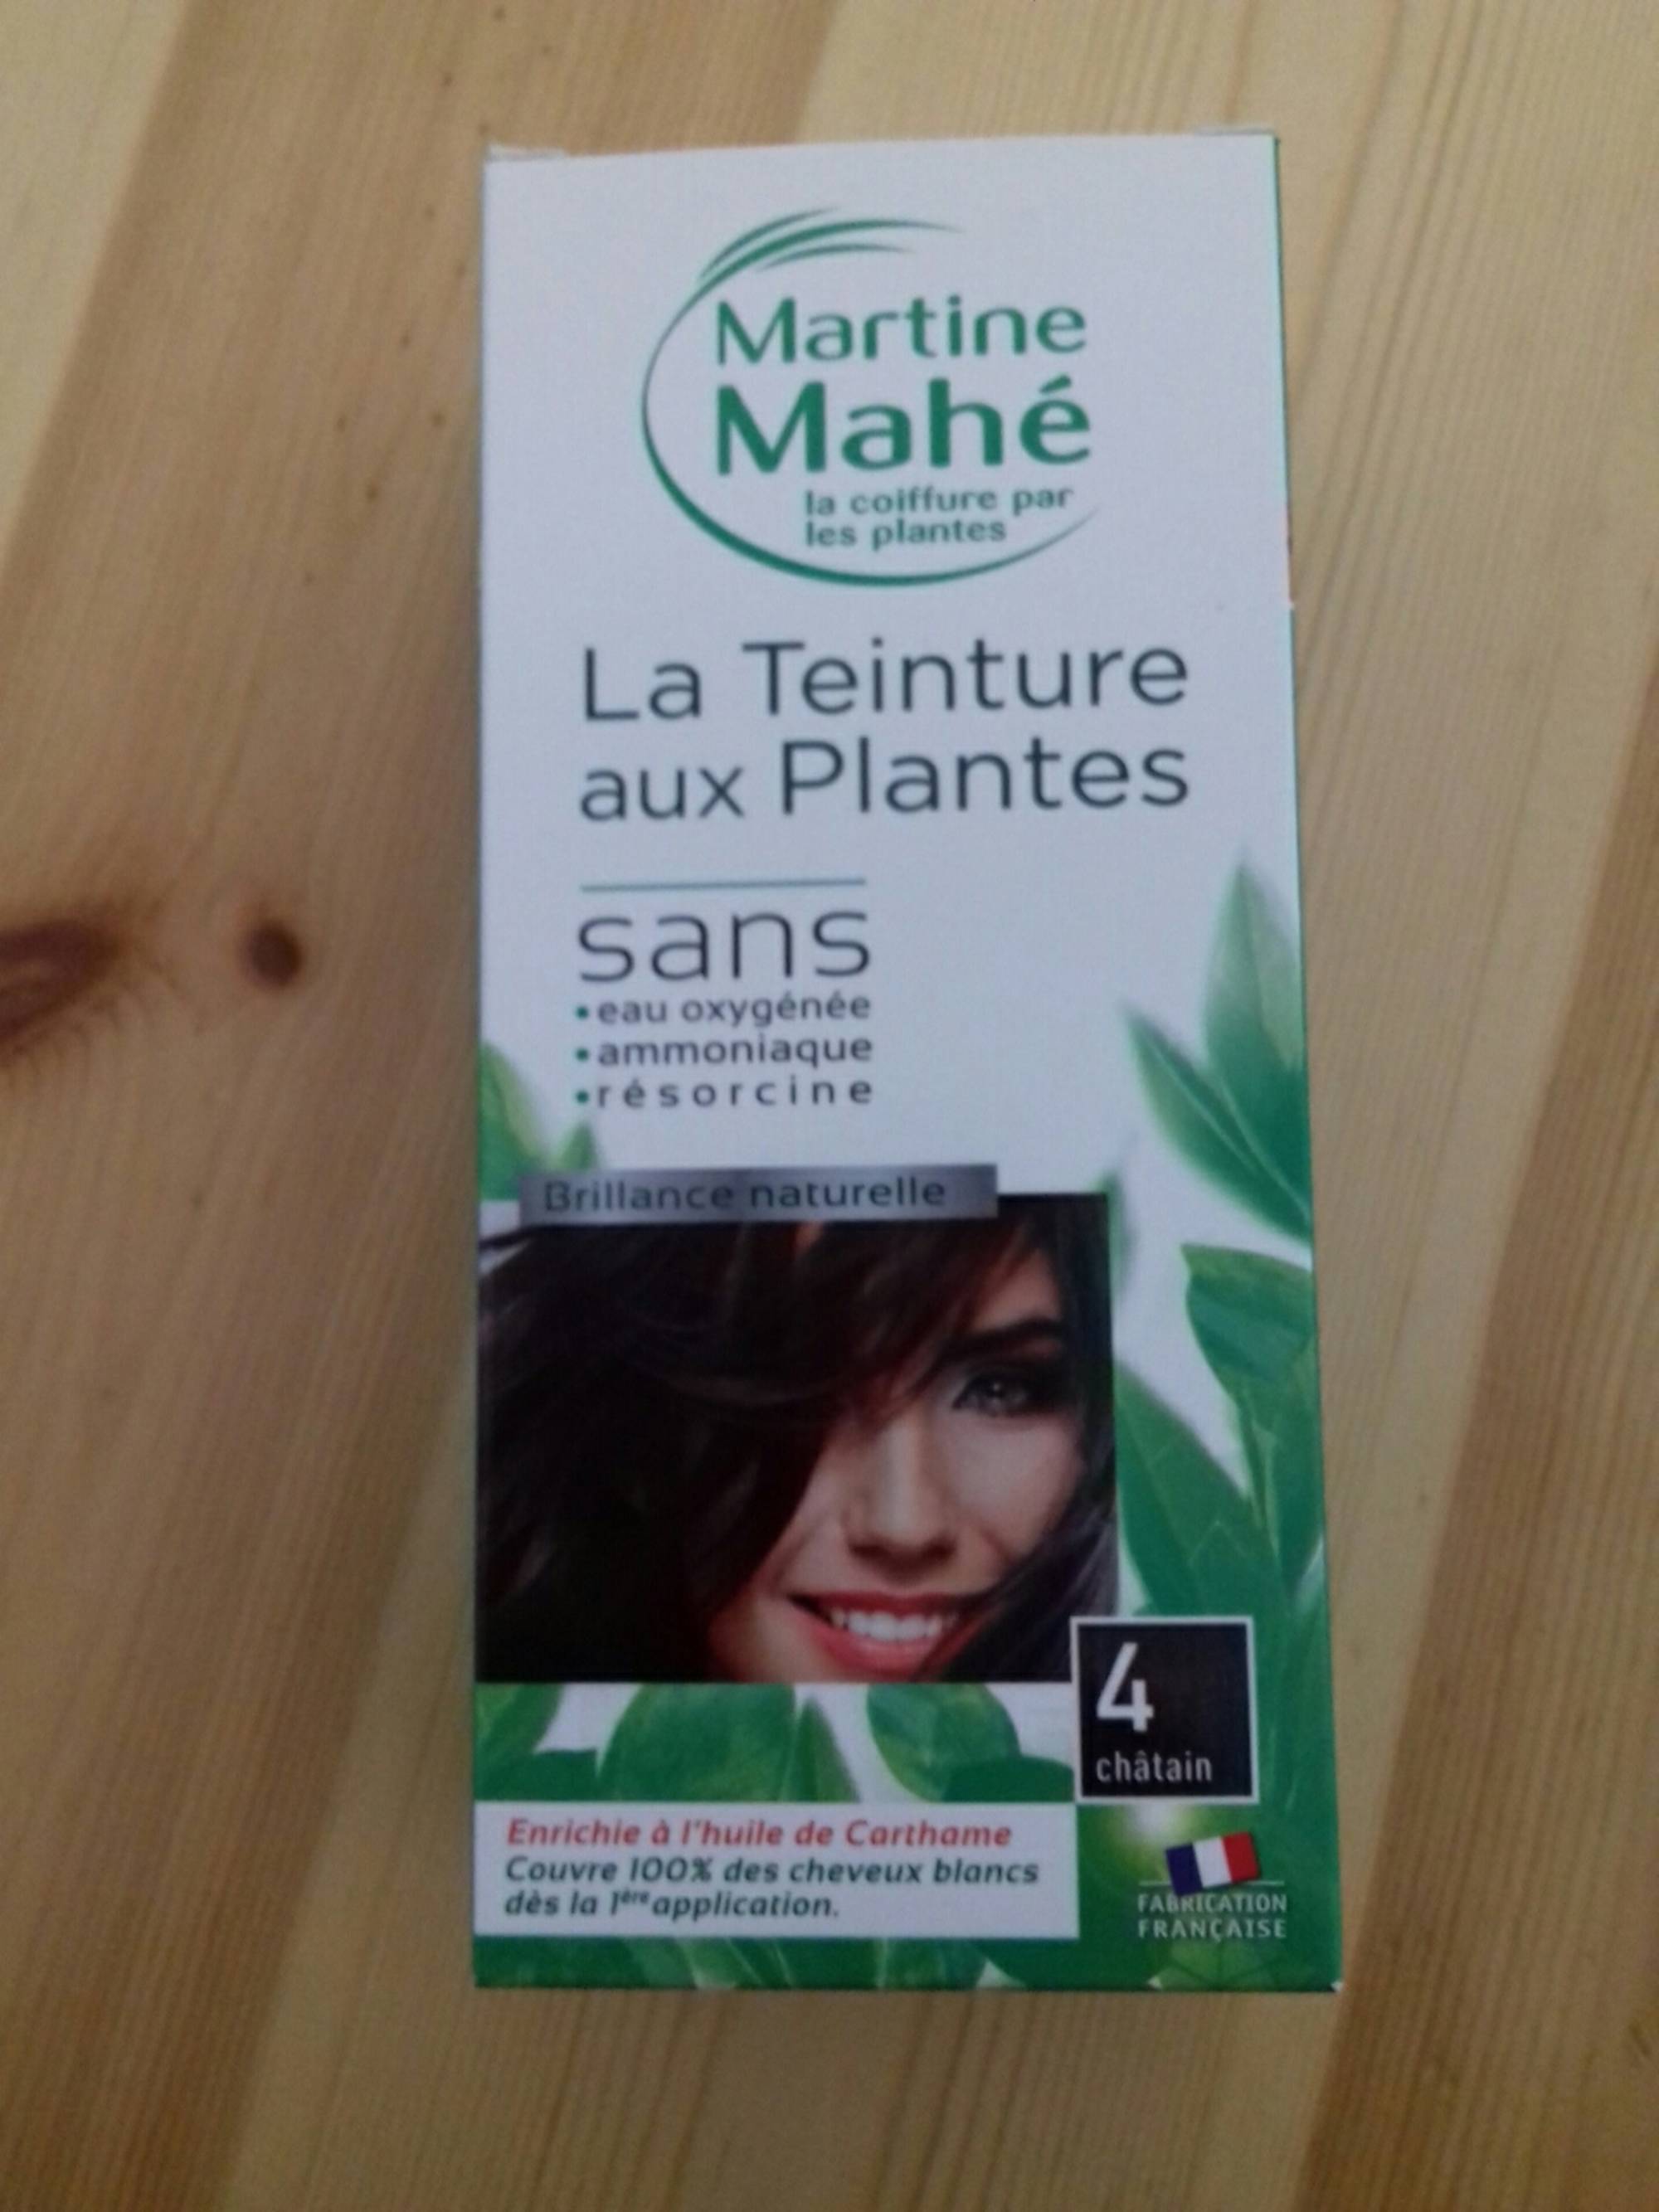 MARTINE MAHÉ - La teinture aux plantes 4 châtain